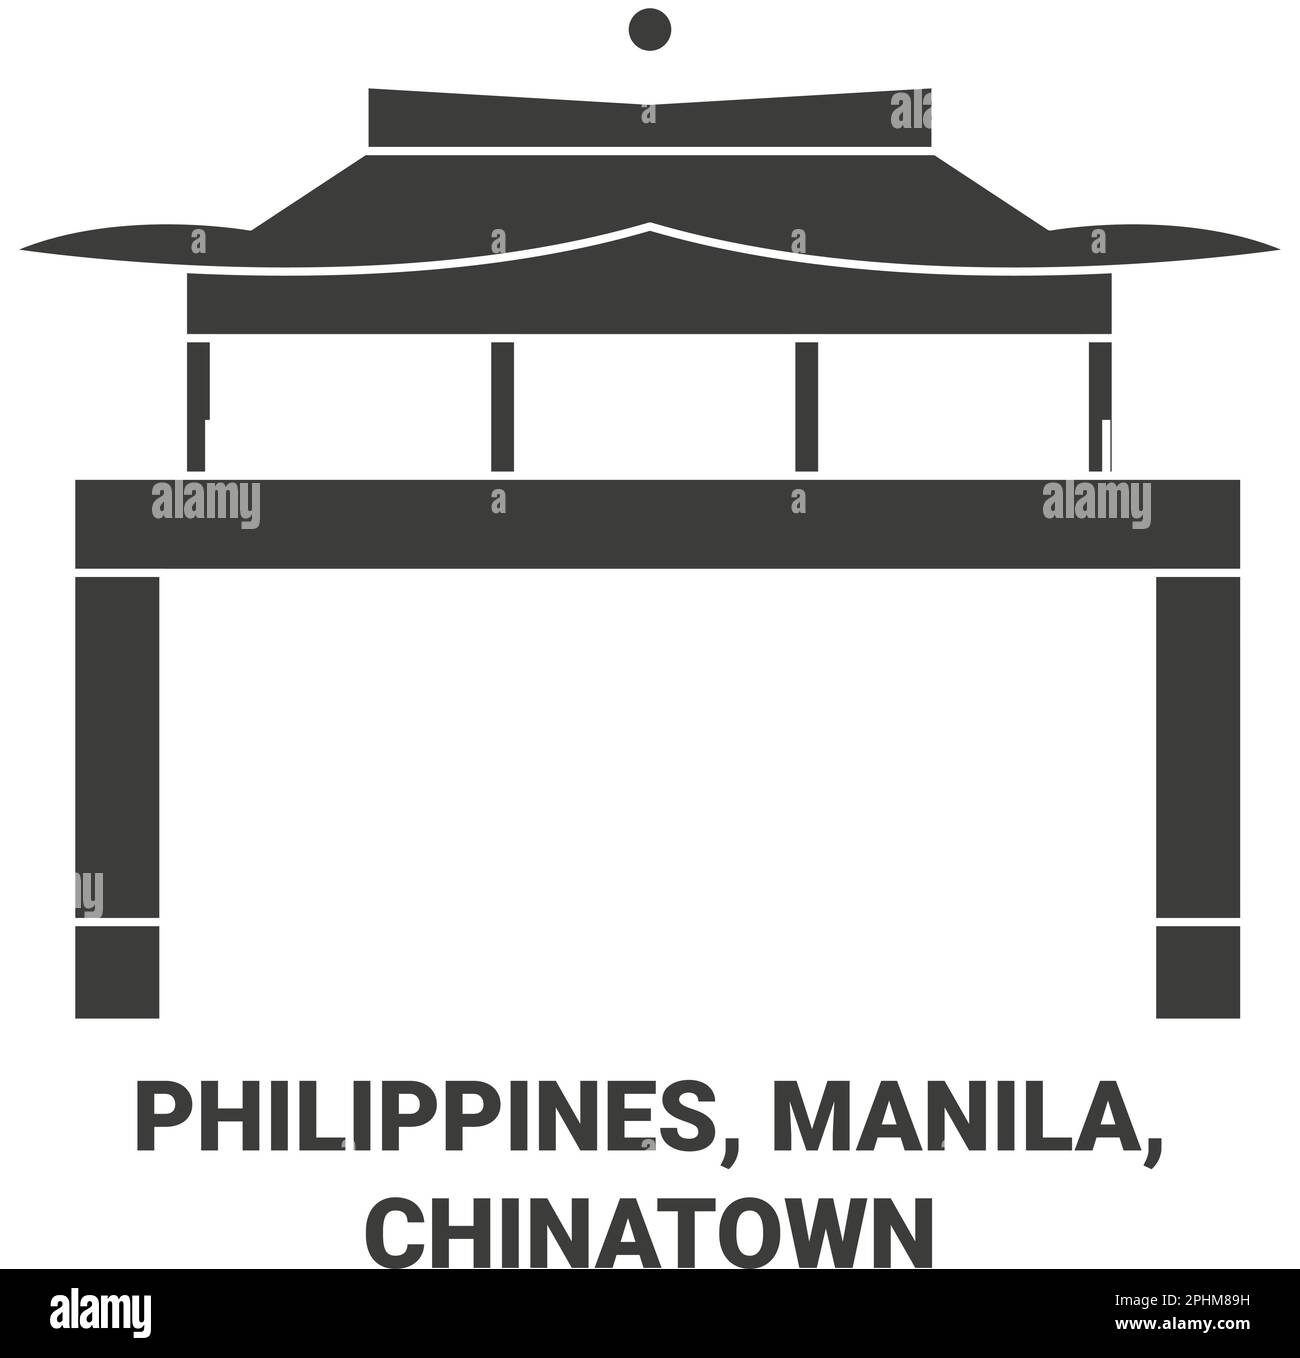 Illustration vectorielle de voyage aux Philippines, Manille, Chinatown Illustration de Vecteur